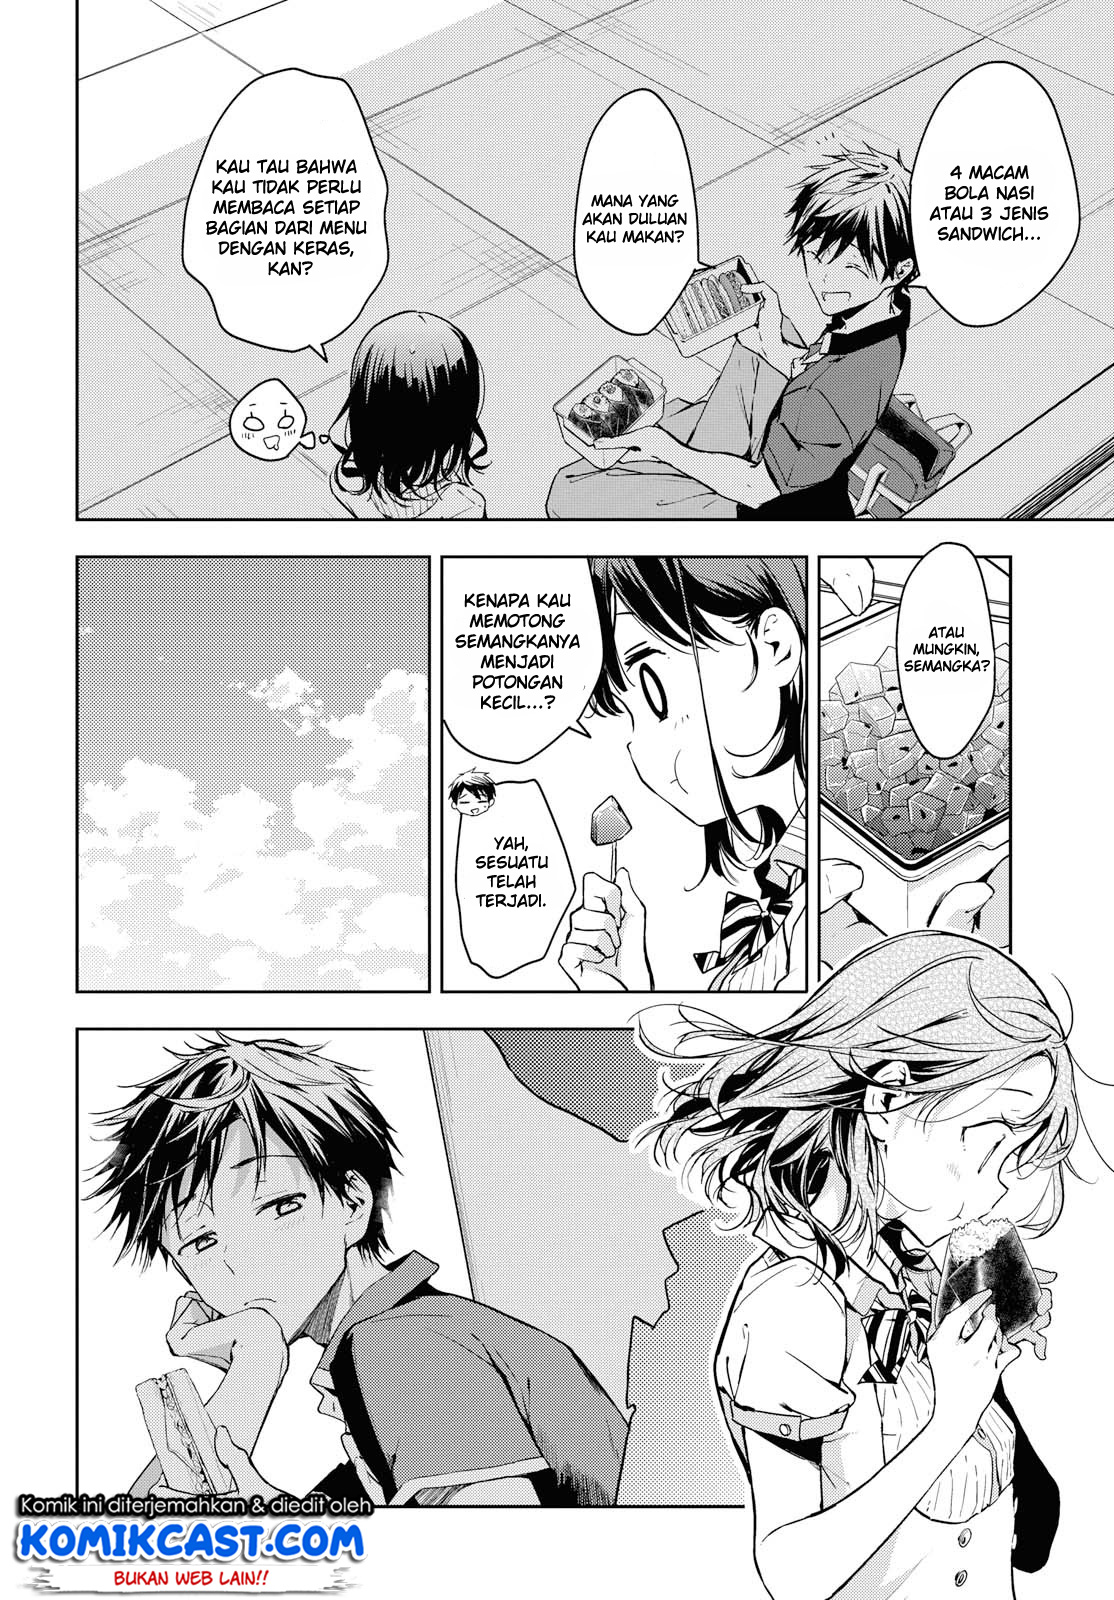 Masamune-kun no Revenge after school Chapter 07 - End